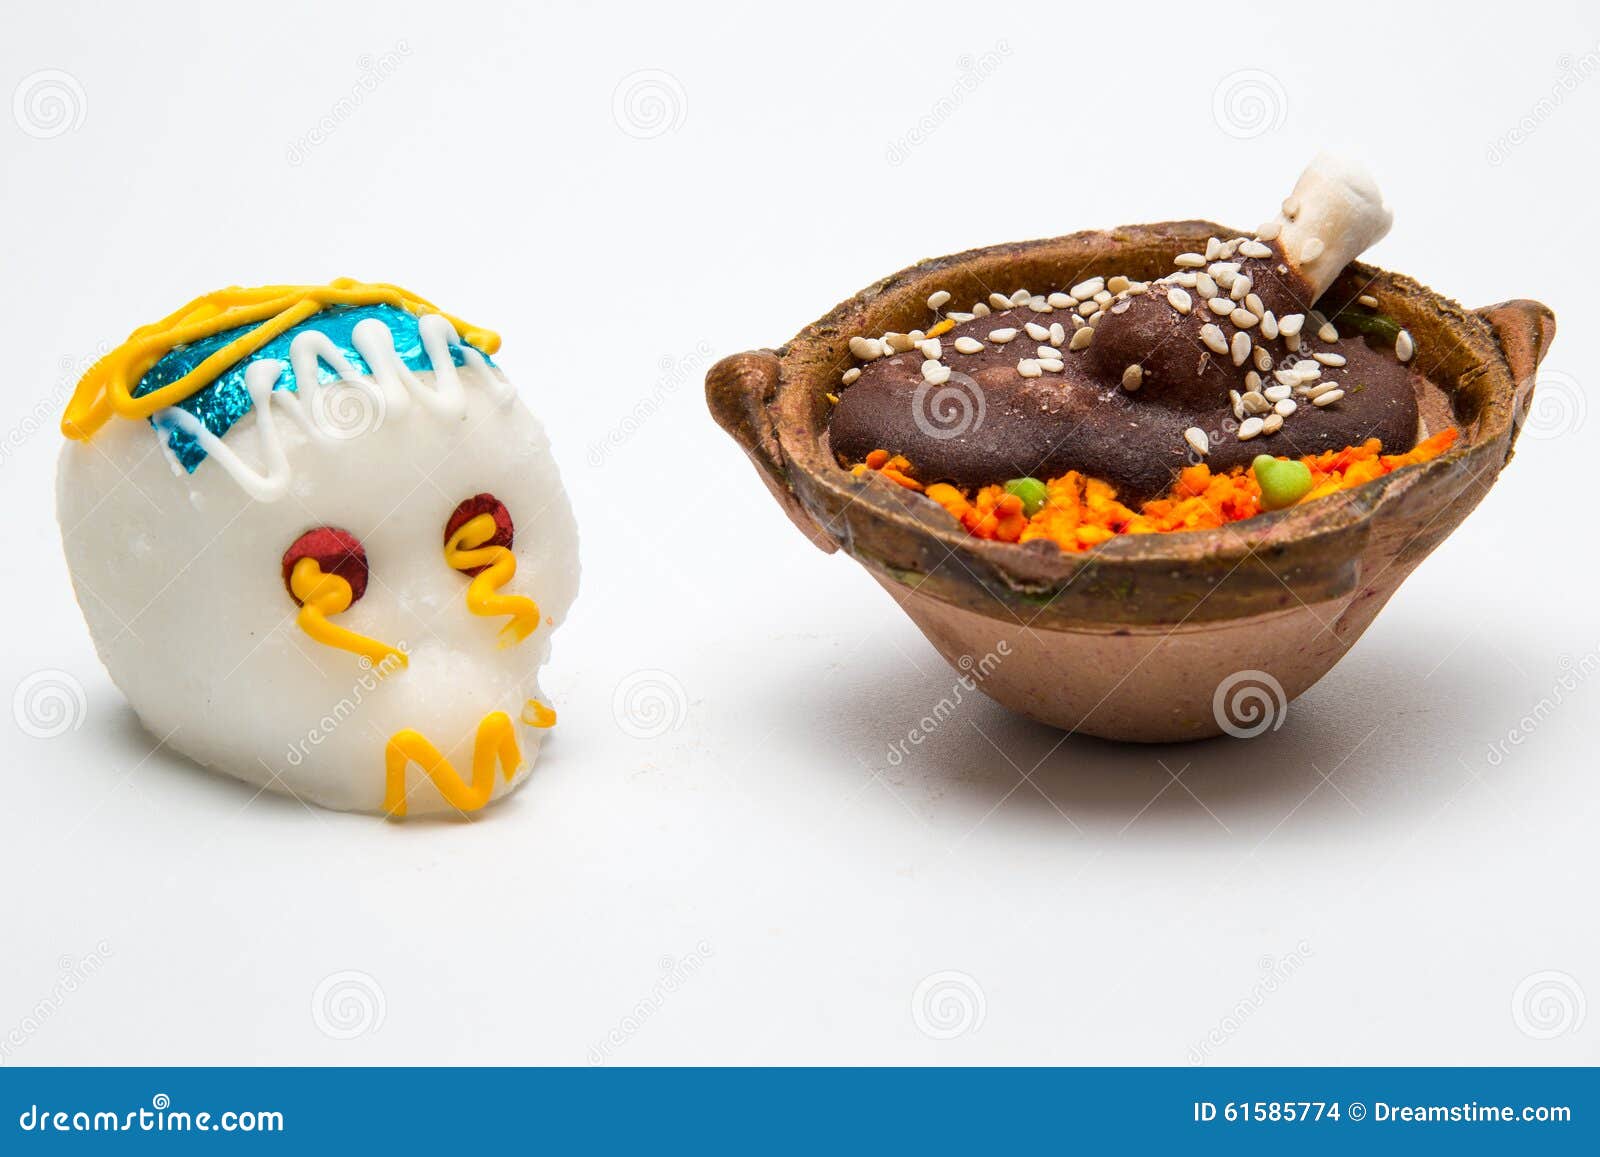 mexican white calaverita de azucar chocolate and pollo con mole candy